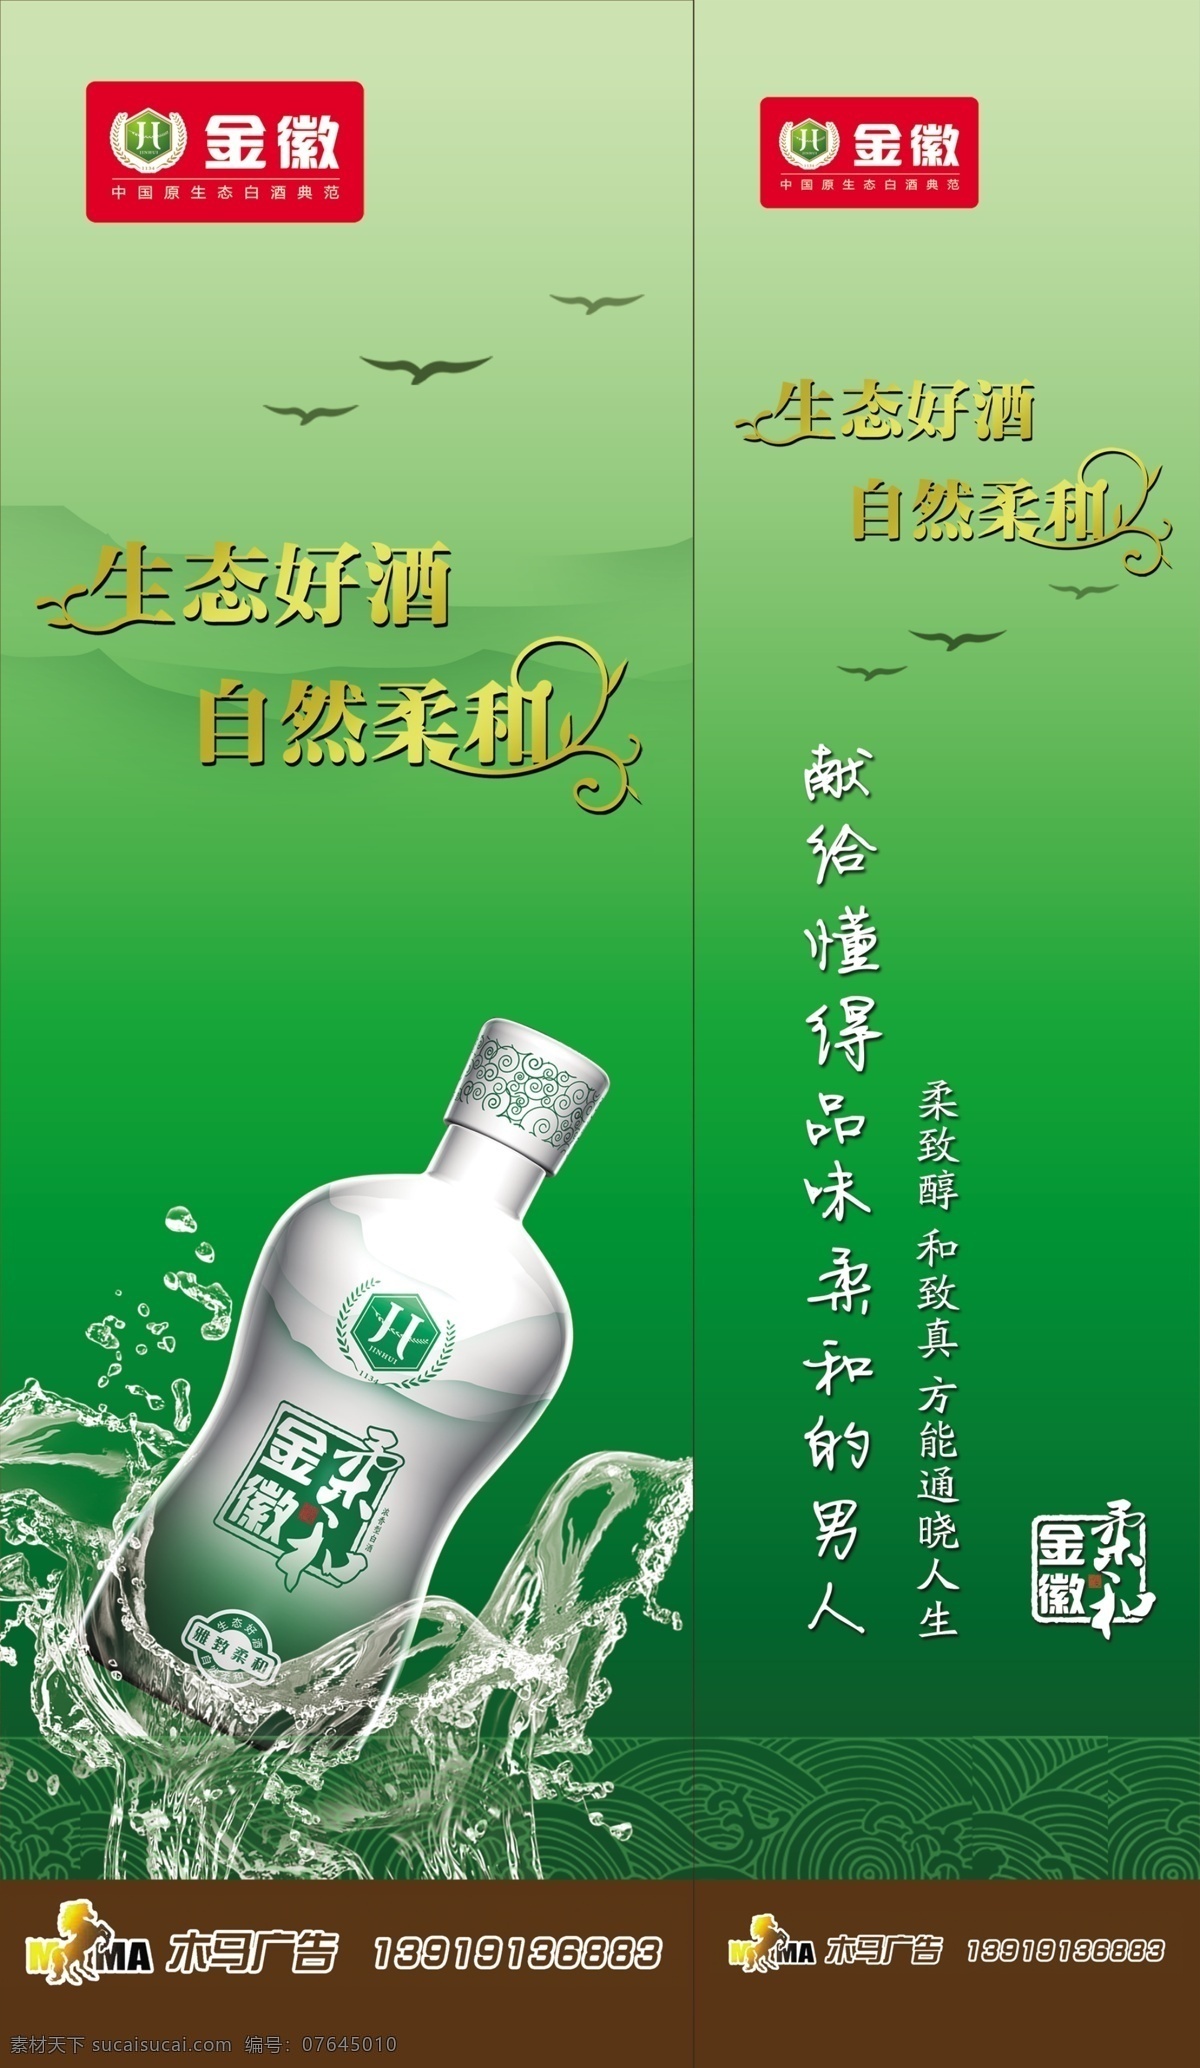 世纪金徽酒 酒瓶 水花 酒宣传 水珠 线条 广告设计模板 源文件